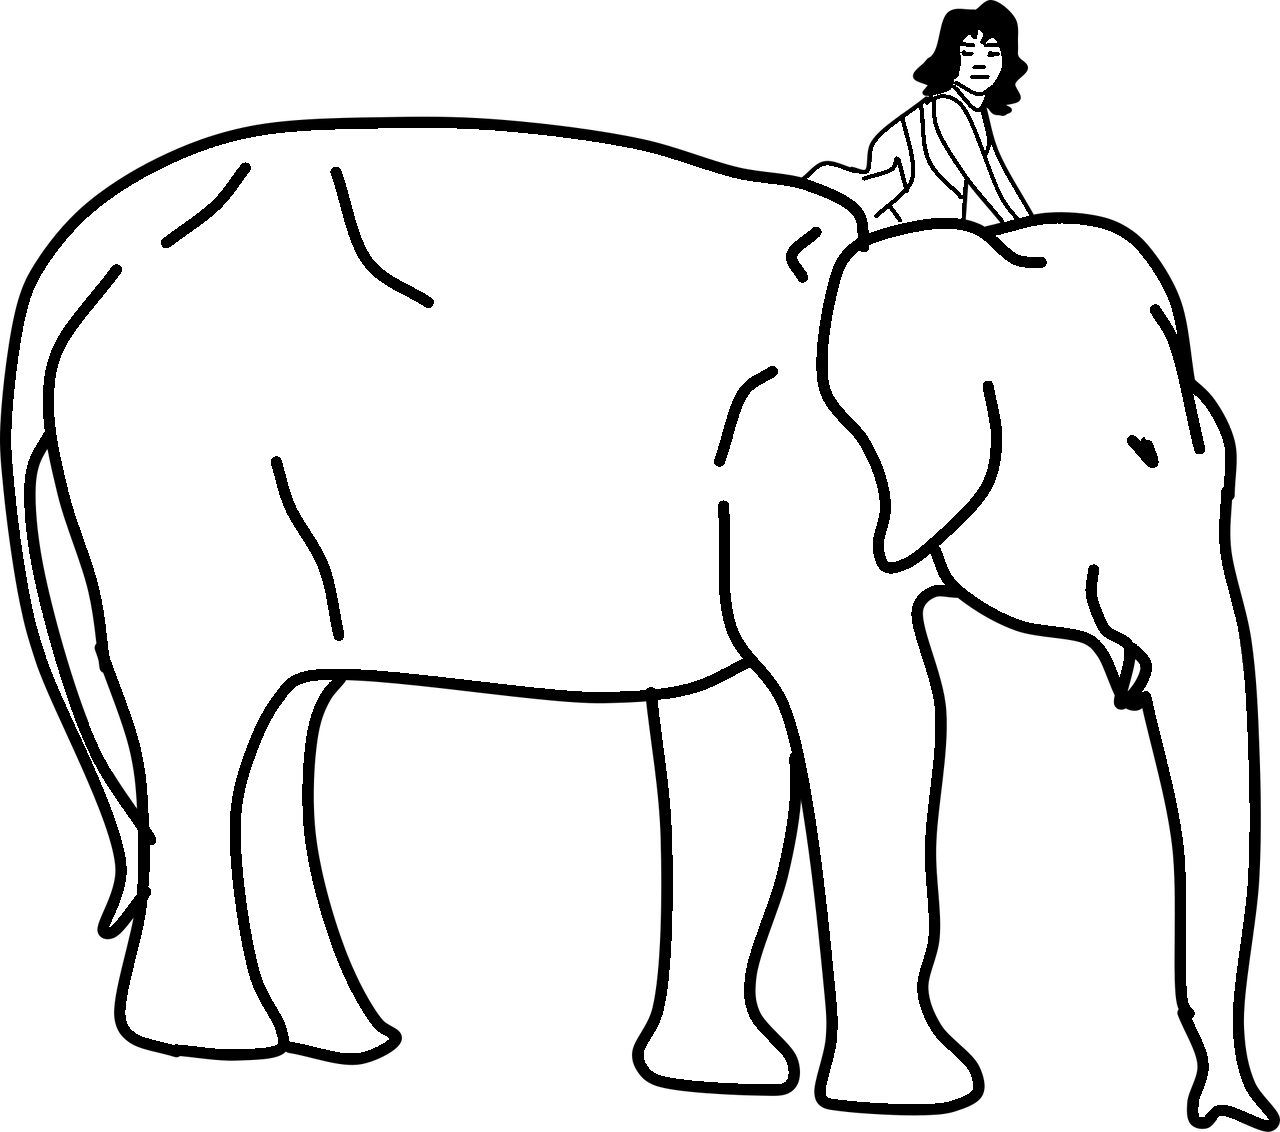 Disegno da colorare di elefante con donna